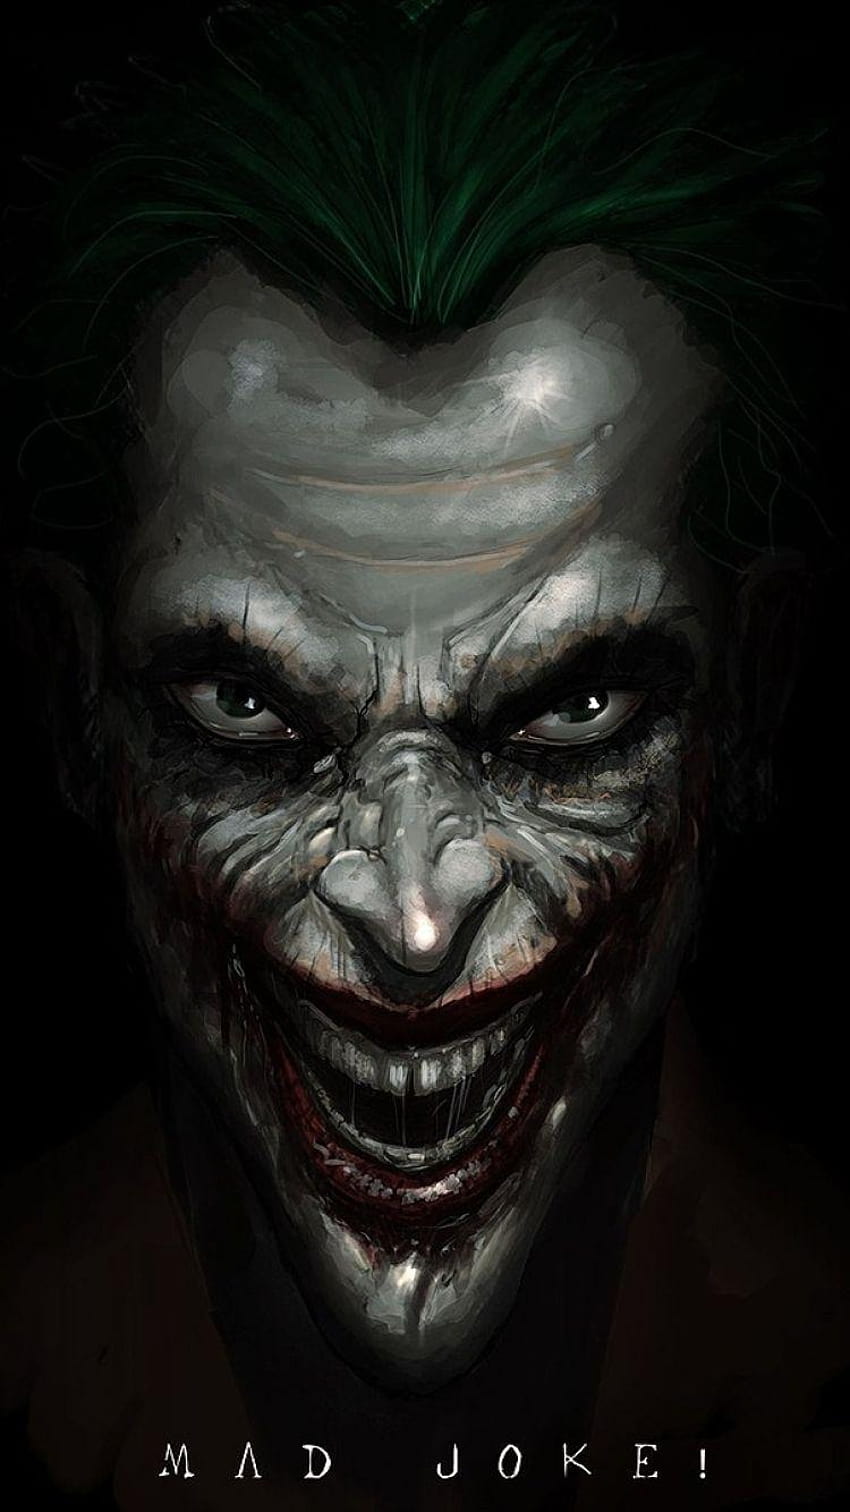 Comics/Joker, joker for mobile HD phone wallpaper | Pxfuel